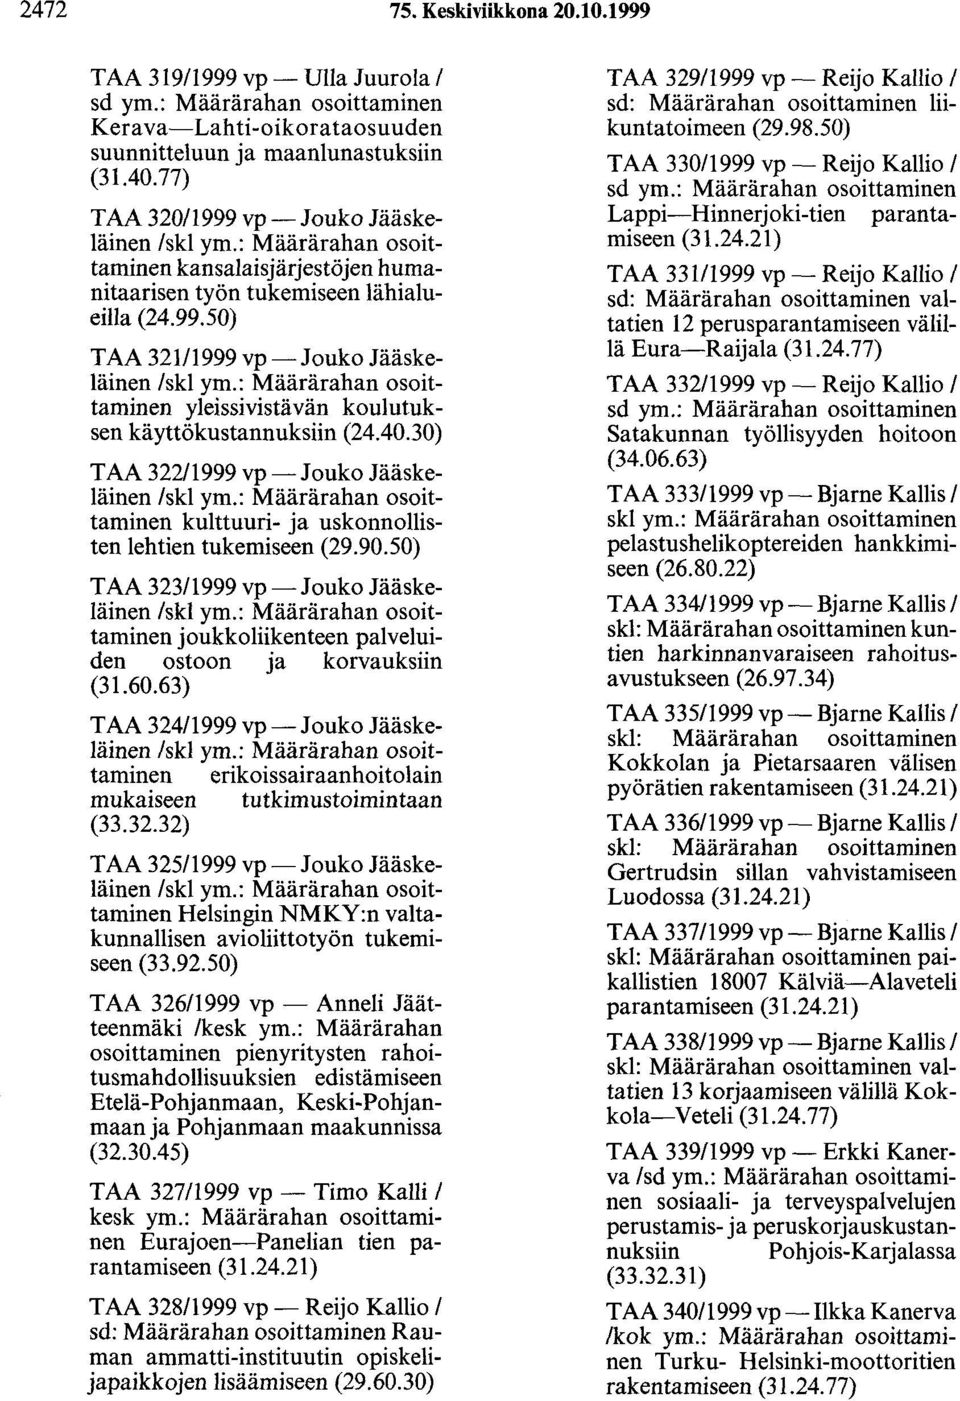 : Määrärahan osoittaminen yleissivistävän koulutuksen käyttökustannuksiin (24.40.30) TAA 322/1999 vp -Jouko Jääskeläinen /skl ym.